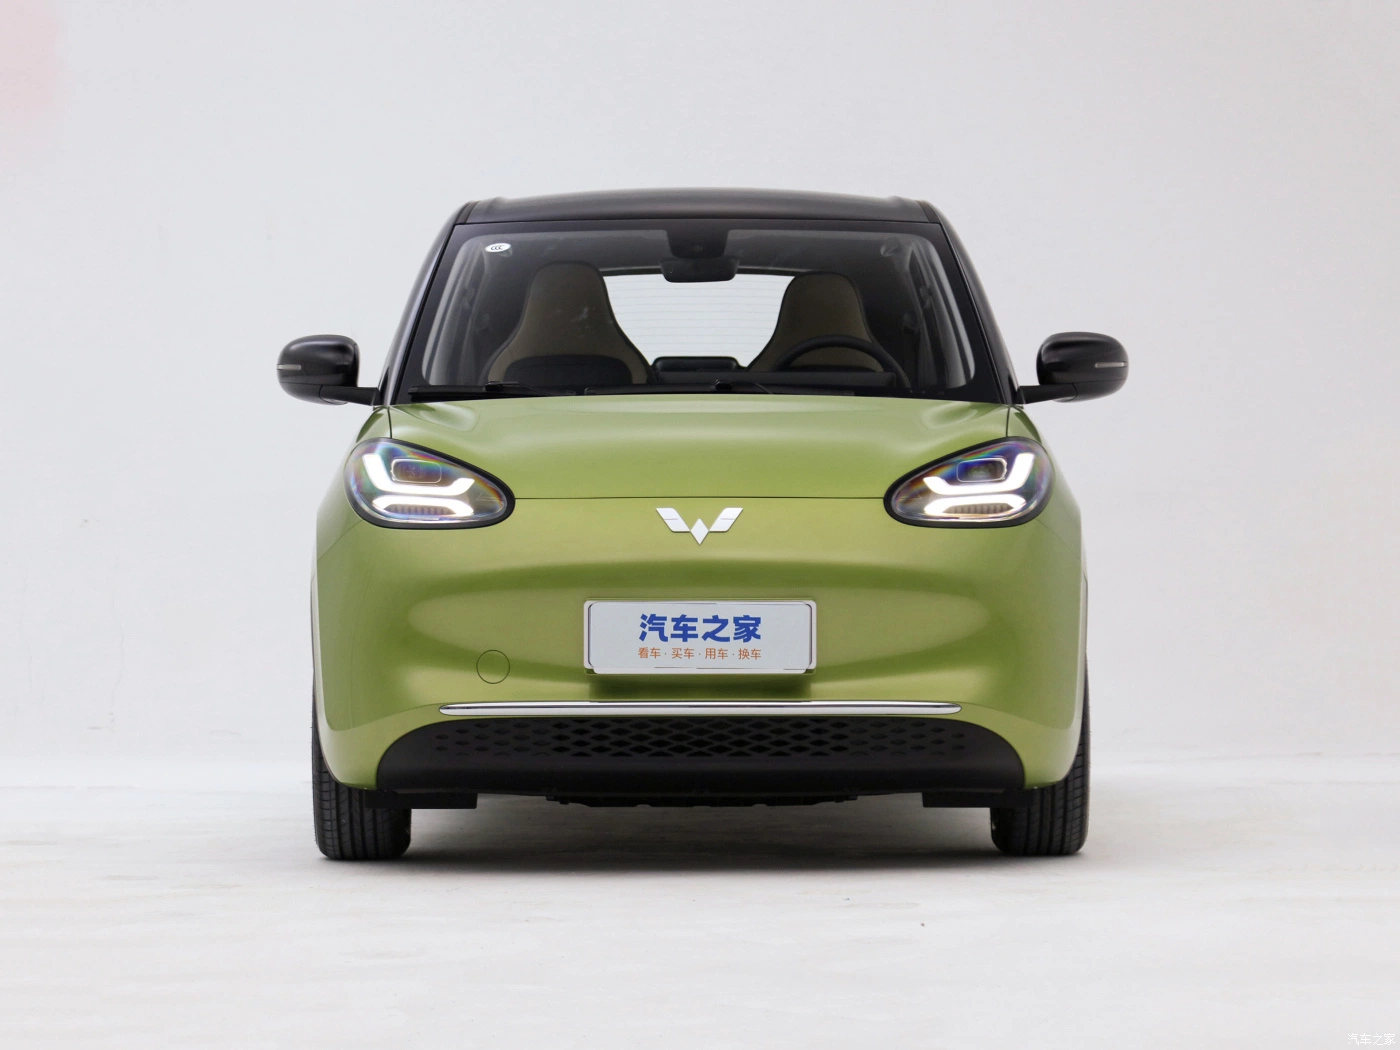 أوكازيون ساخن في ستوك فولينغ وصول جديد بينجو 2023 على بعد 203 كيلومتر سيارة كهربائية جديدة تعمل بتقنية Energy Smart بأربعة مقاعد ذات 5 أبواب مصنوعة في الصين